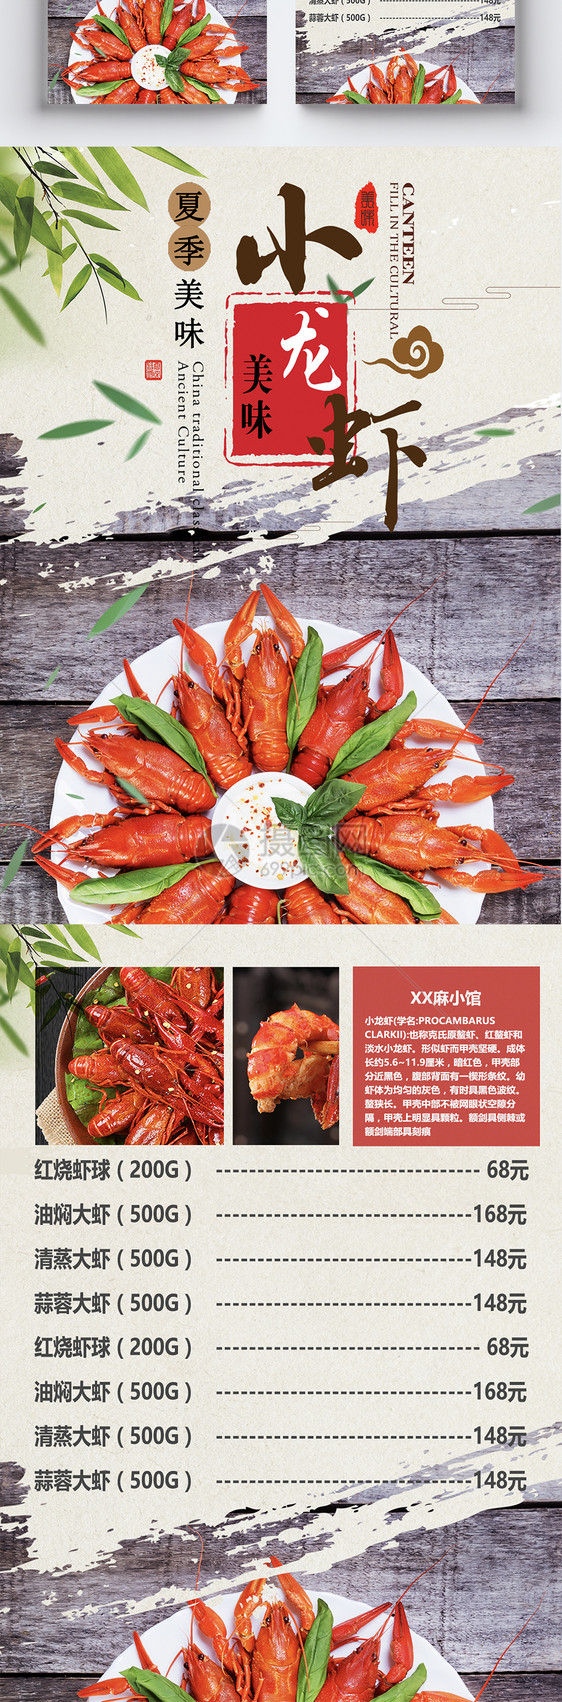 麻辣小龙虾美食宣传单图片